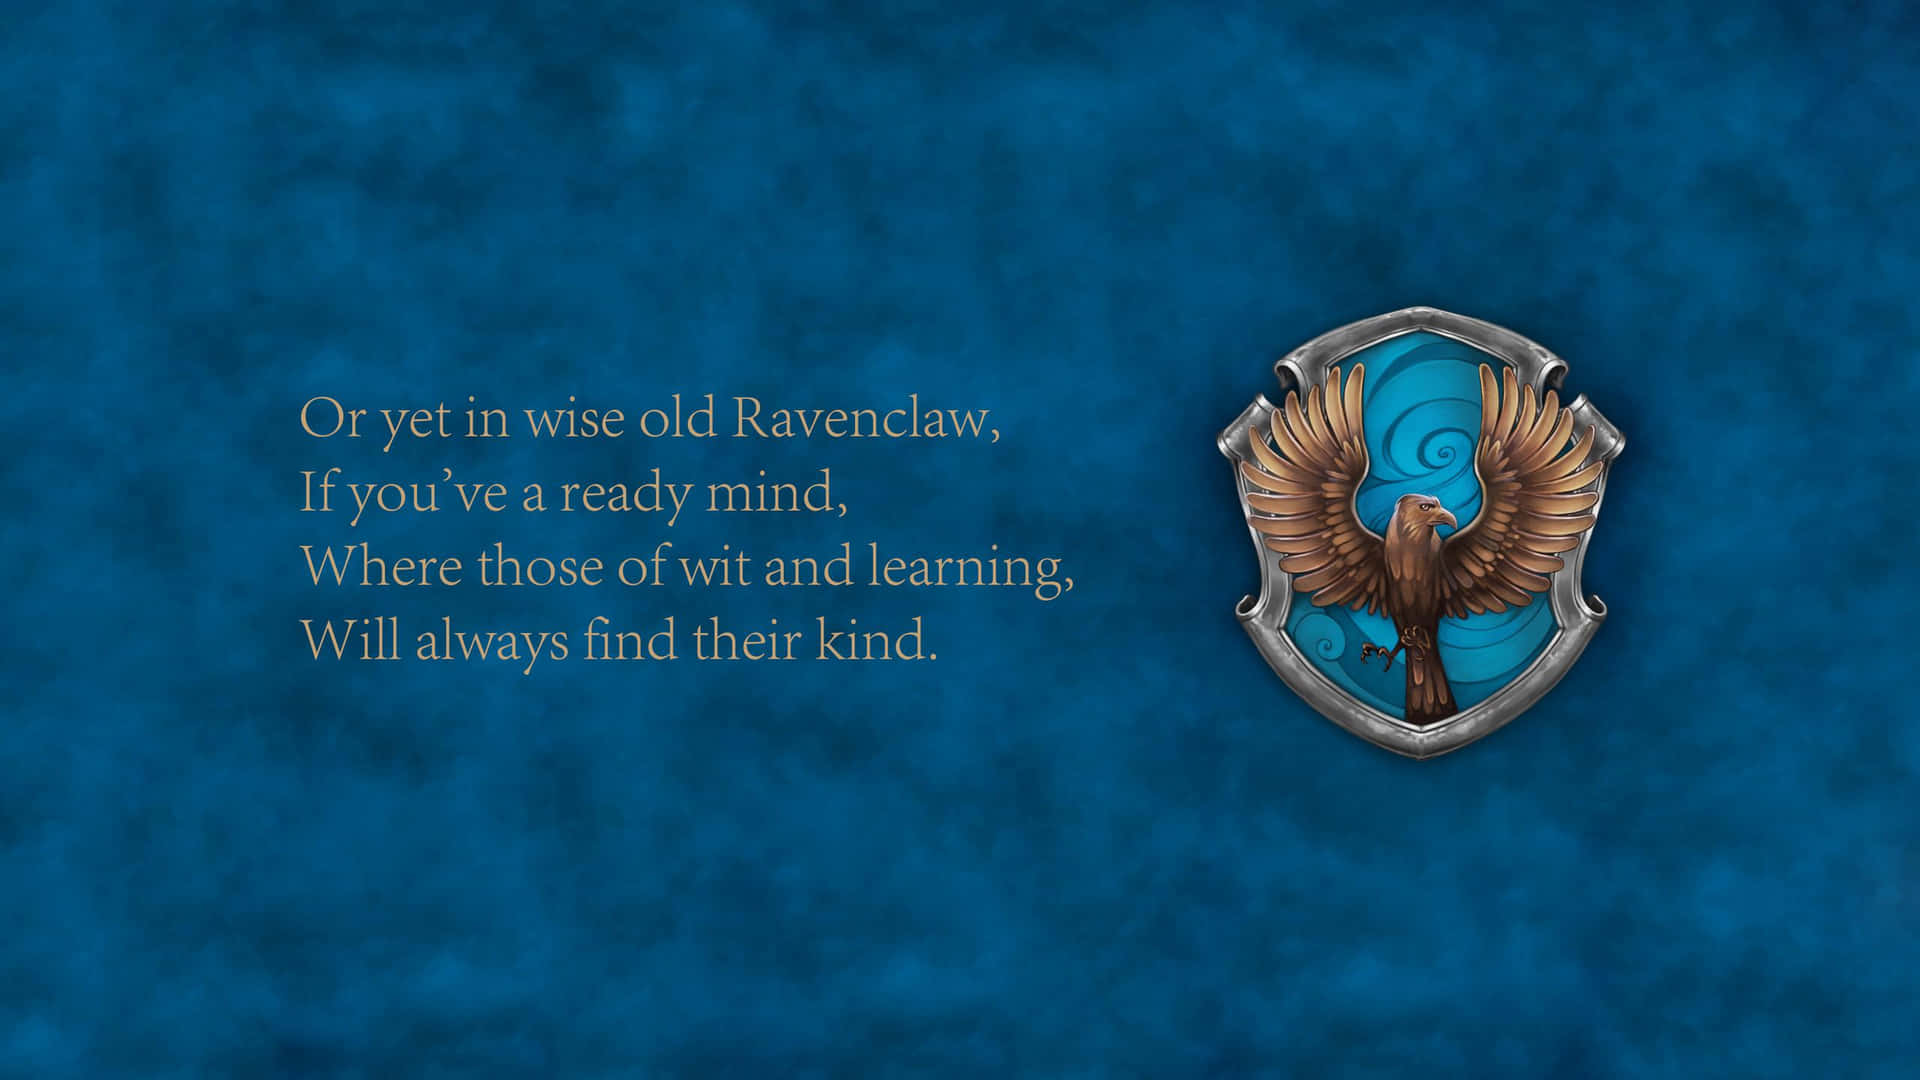 Den berømte Ravenclaw-hus fra Hogwarts har sin egen tapet. Wallpaper